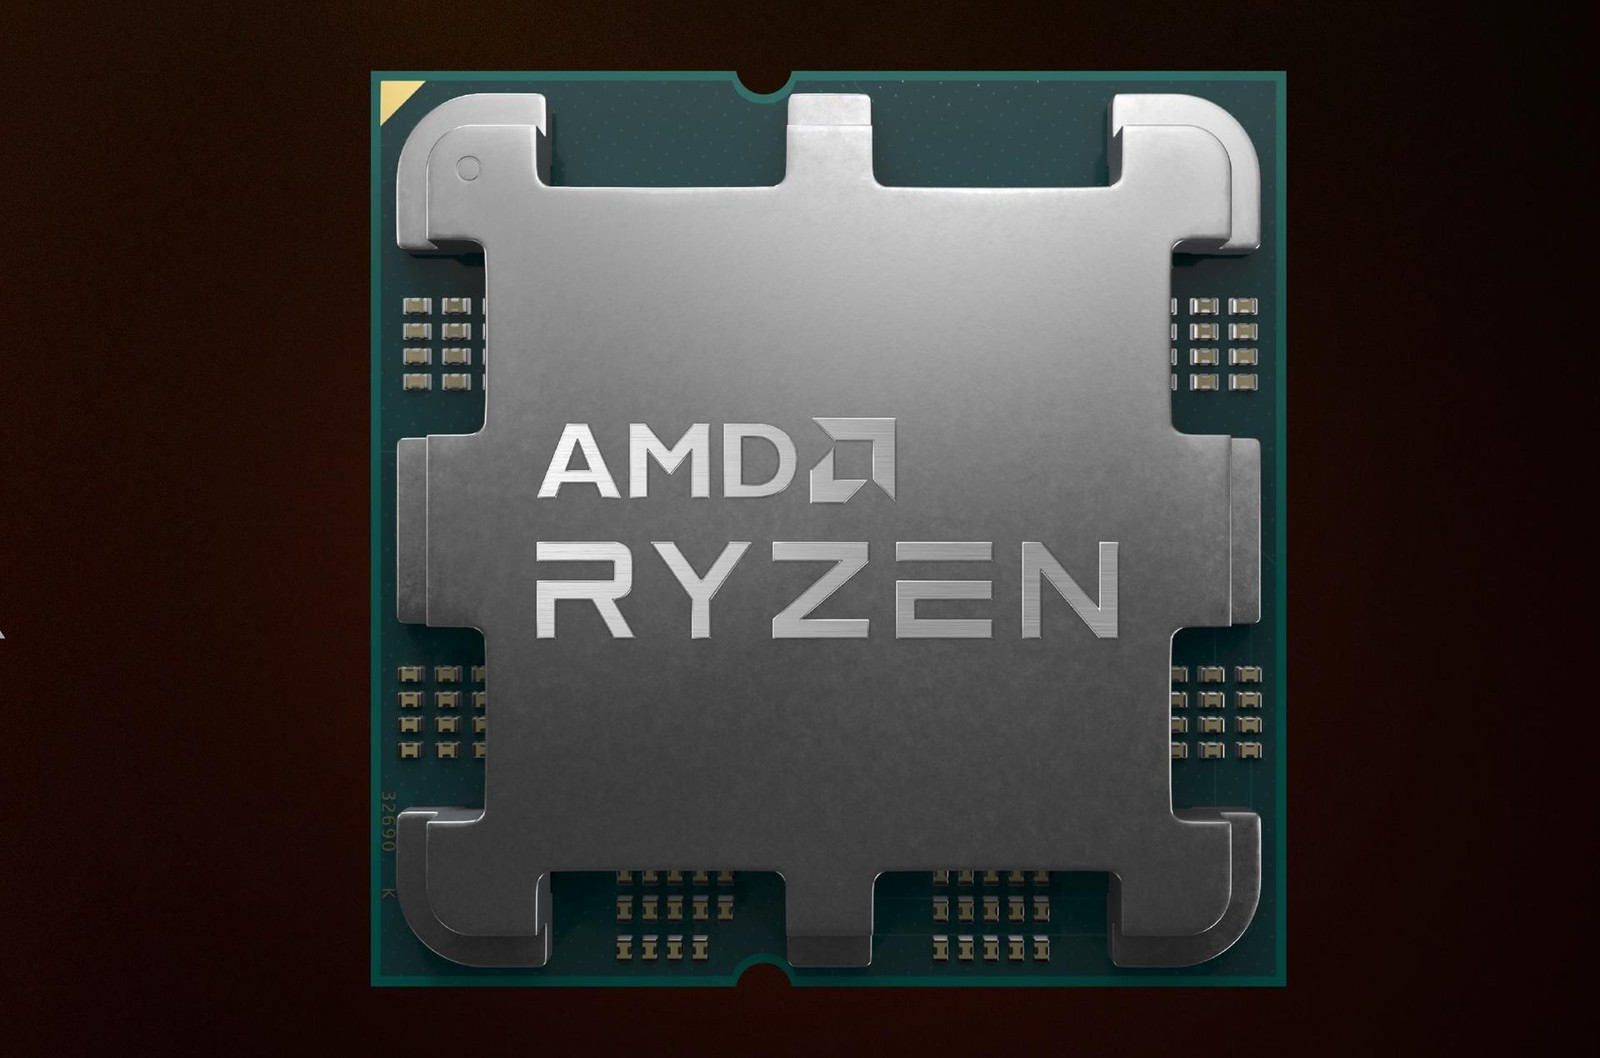 AMD szykuje wyjątkowy procesor Ryzen. Będzie najtańszym CPU z wyjątkowym dodatkiem